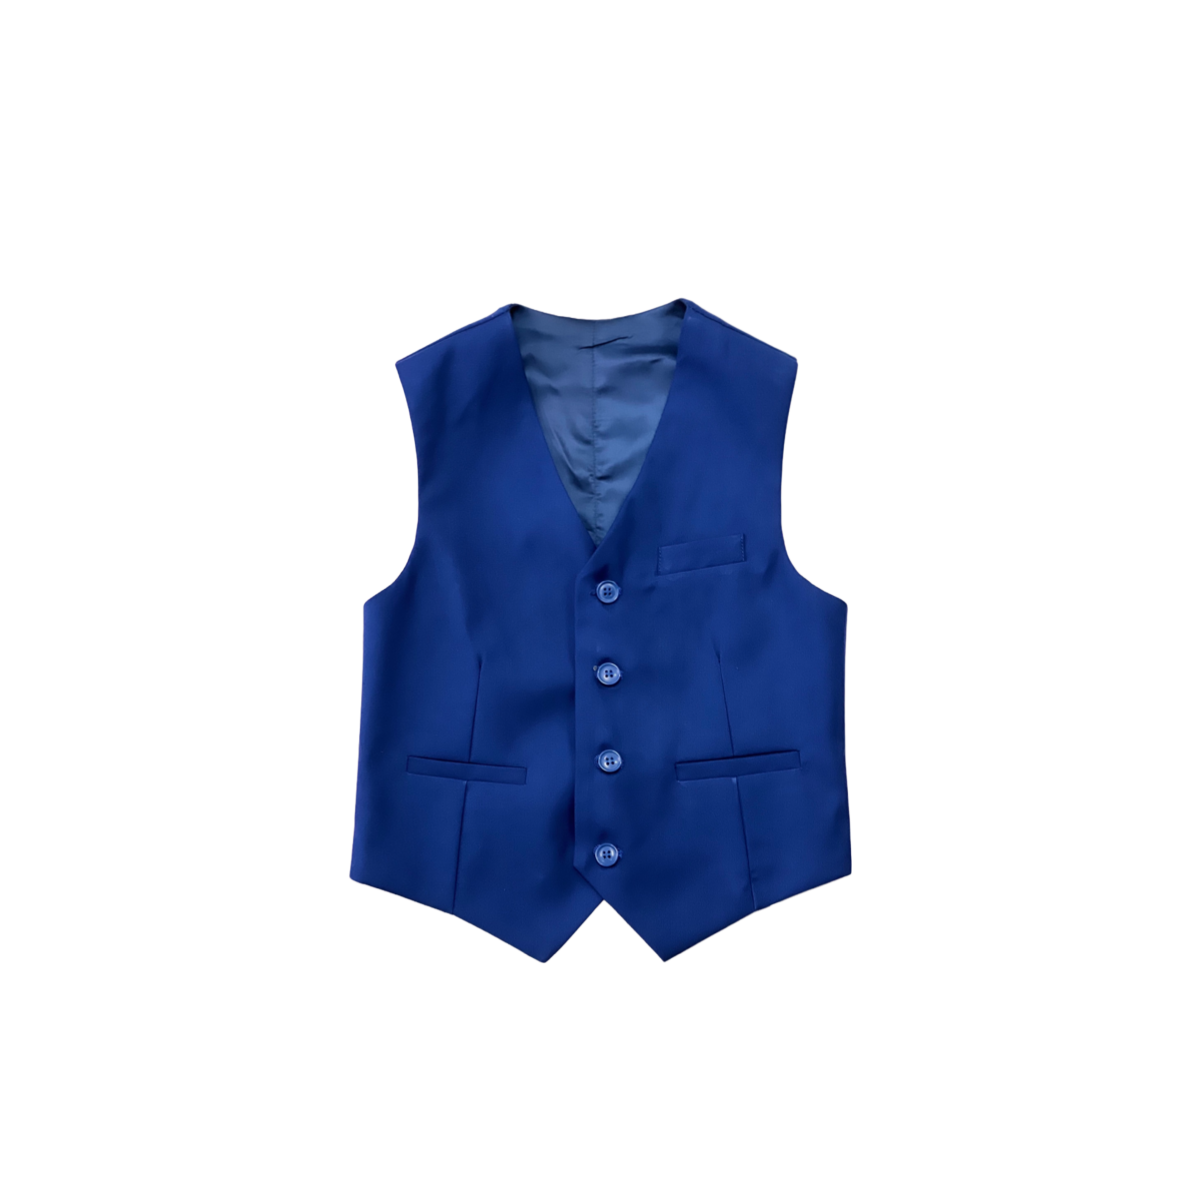 Debonair Slim-Fit Royal Blue Suit